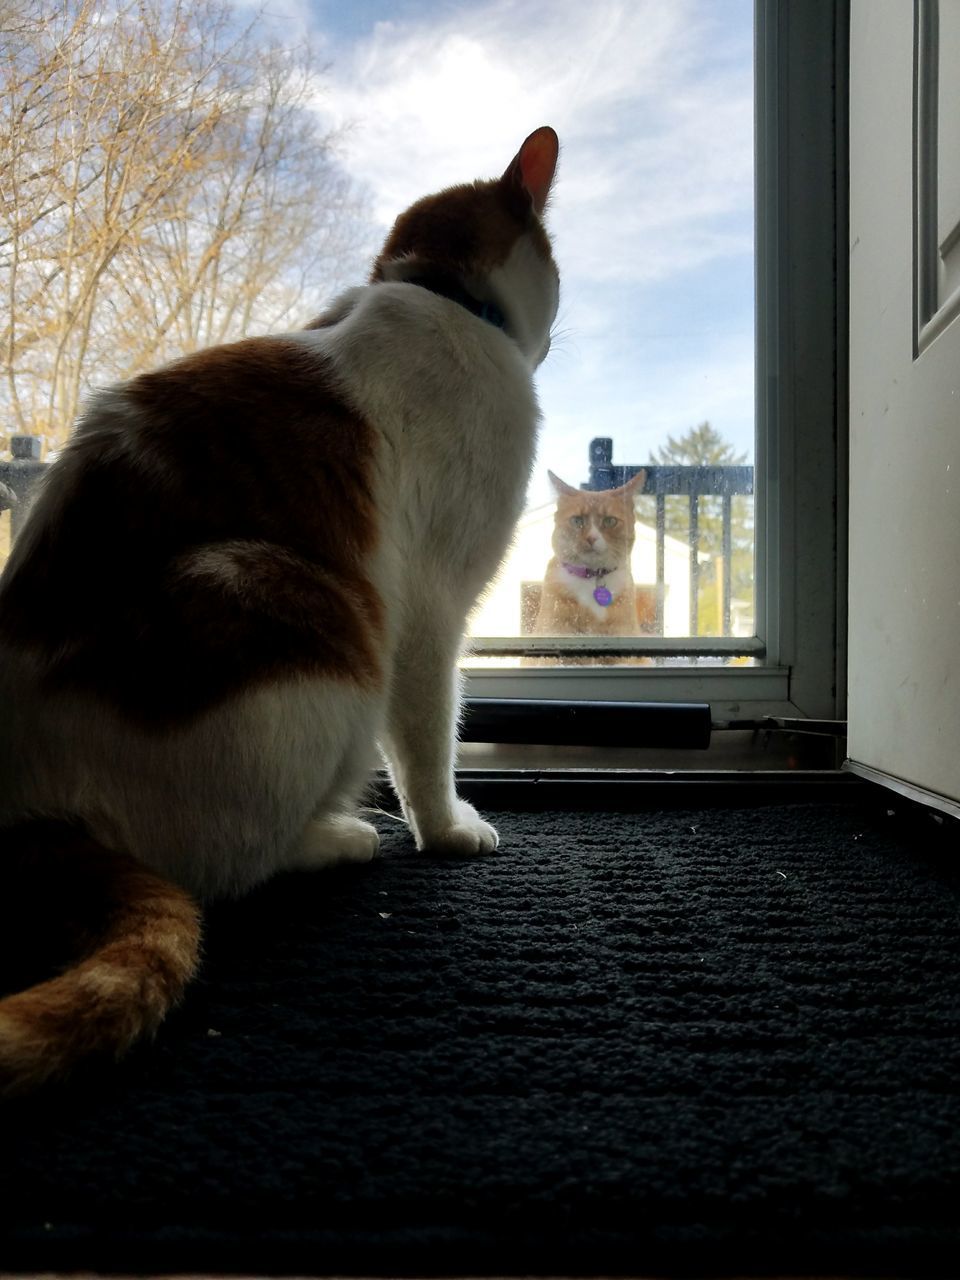 CAT SITTING IN A WINDOW